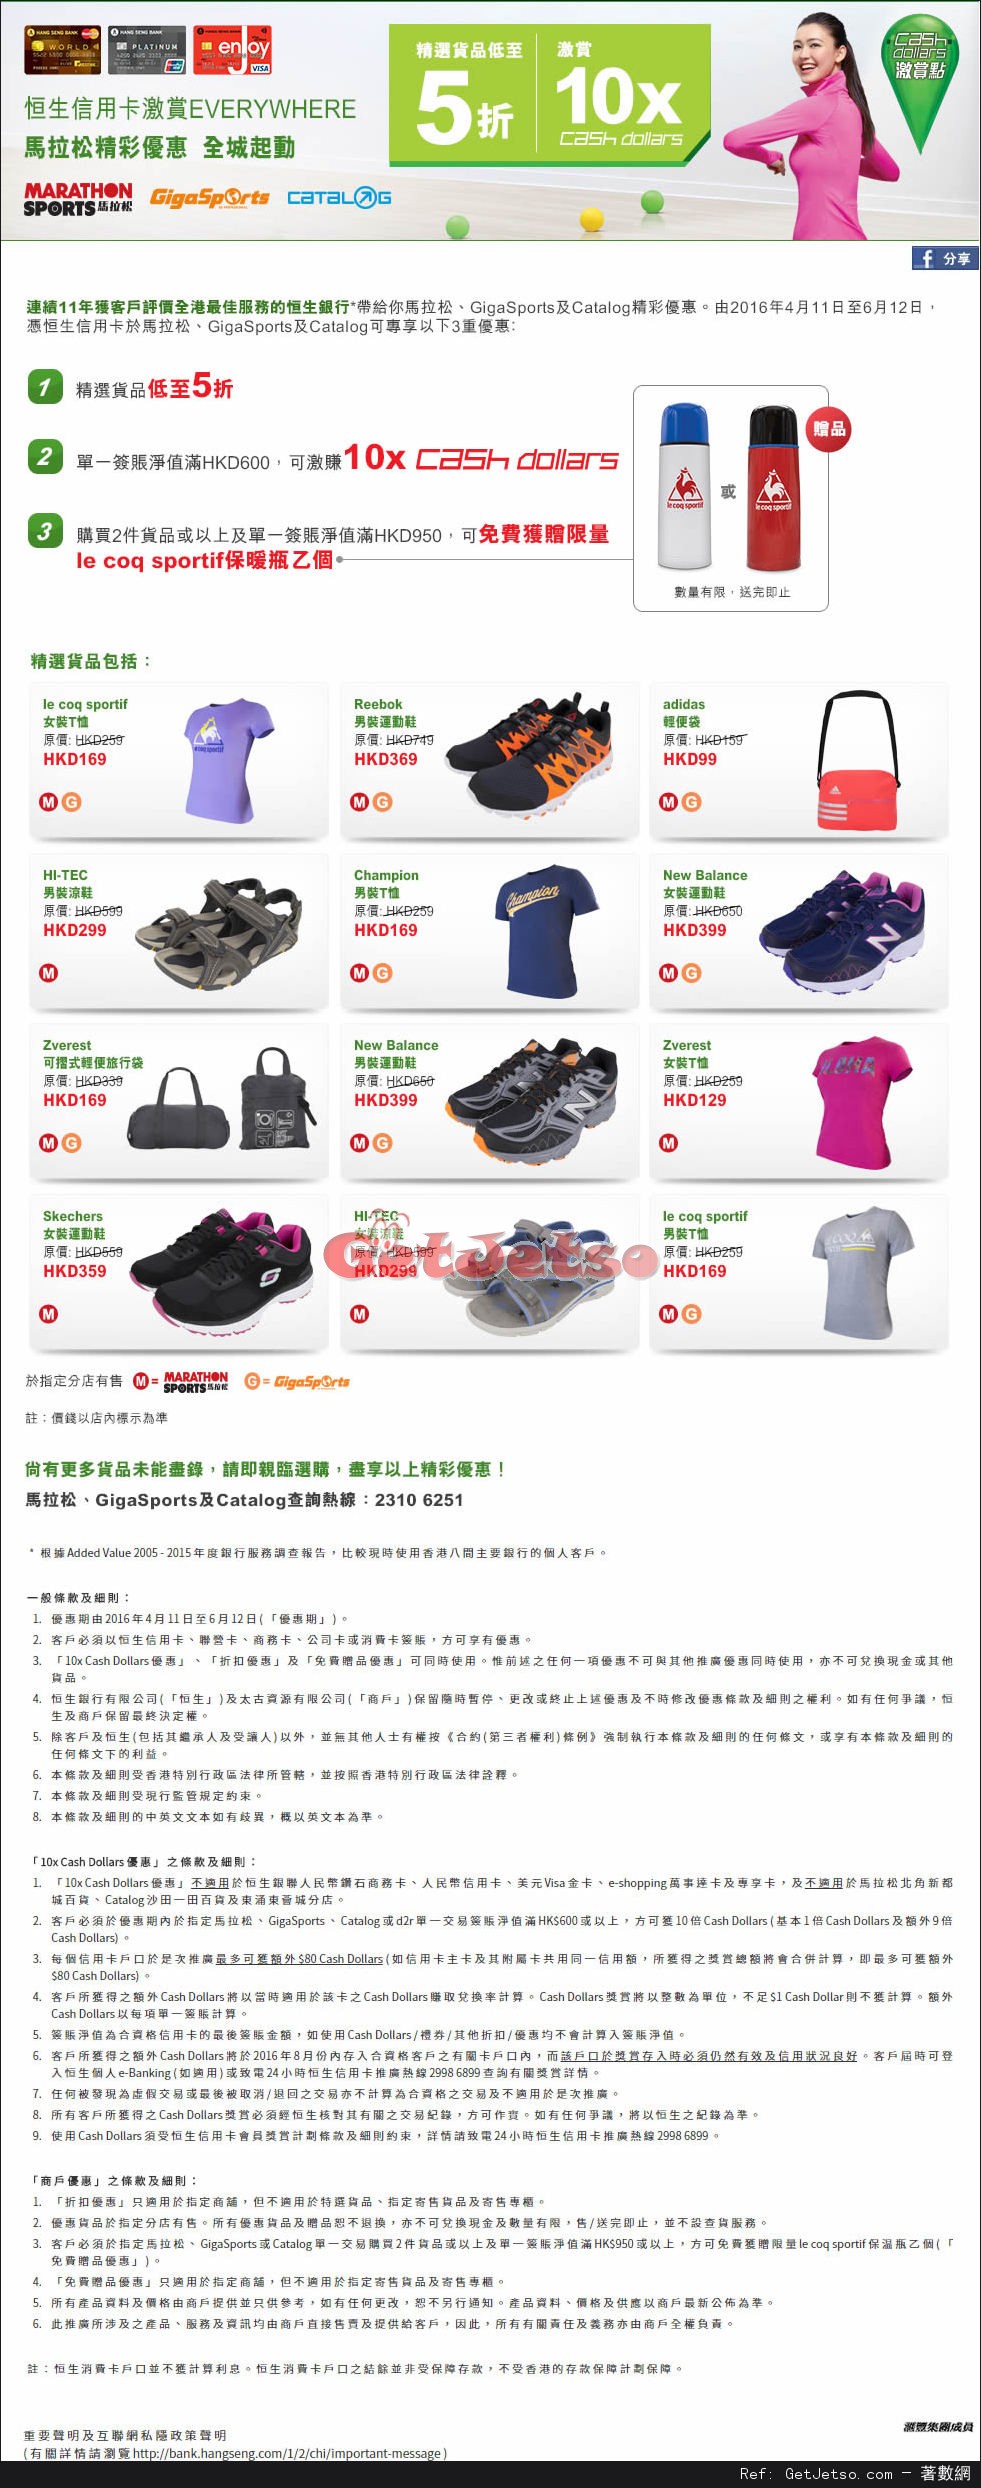 馬拉松/Catalog/GigaSports 低至5折精選貨品優惠@恒生信用卡(17年4月11-6月12日)圖片1